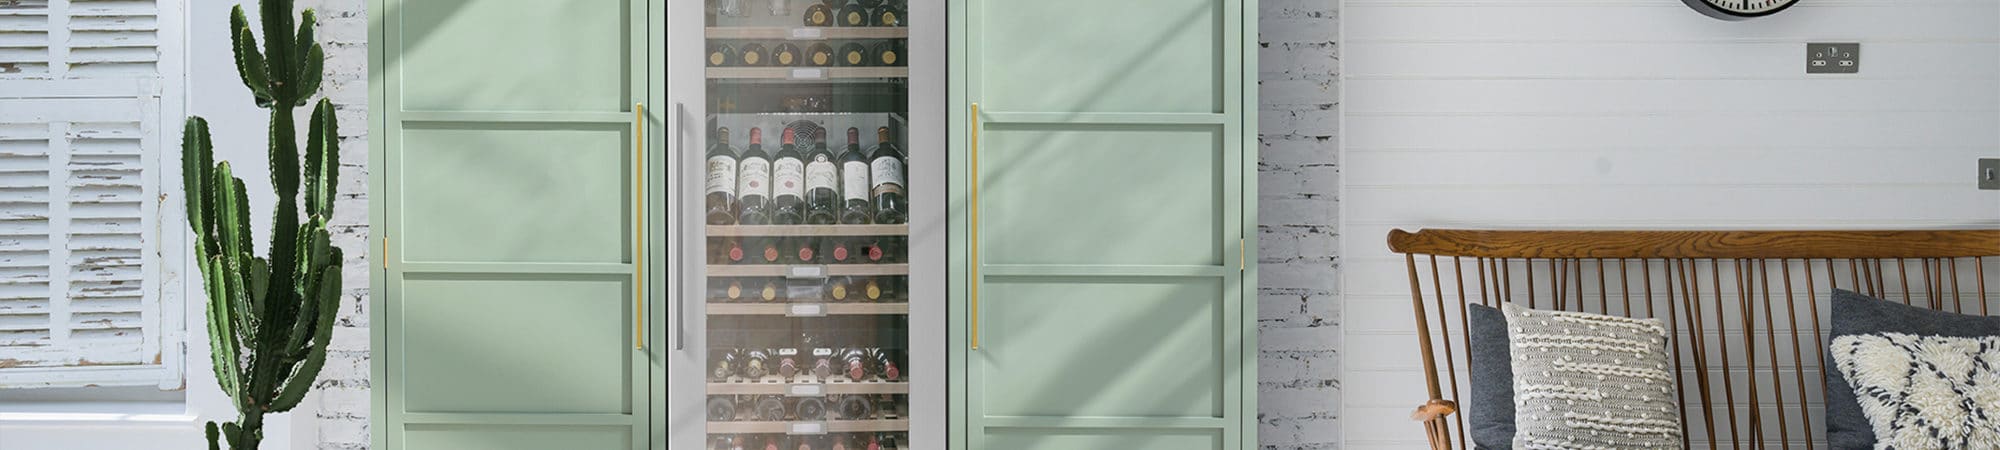 Freestanding Triple Zone Wine Cabinet